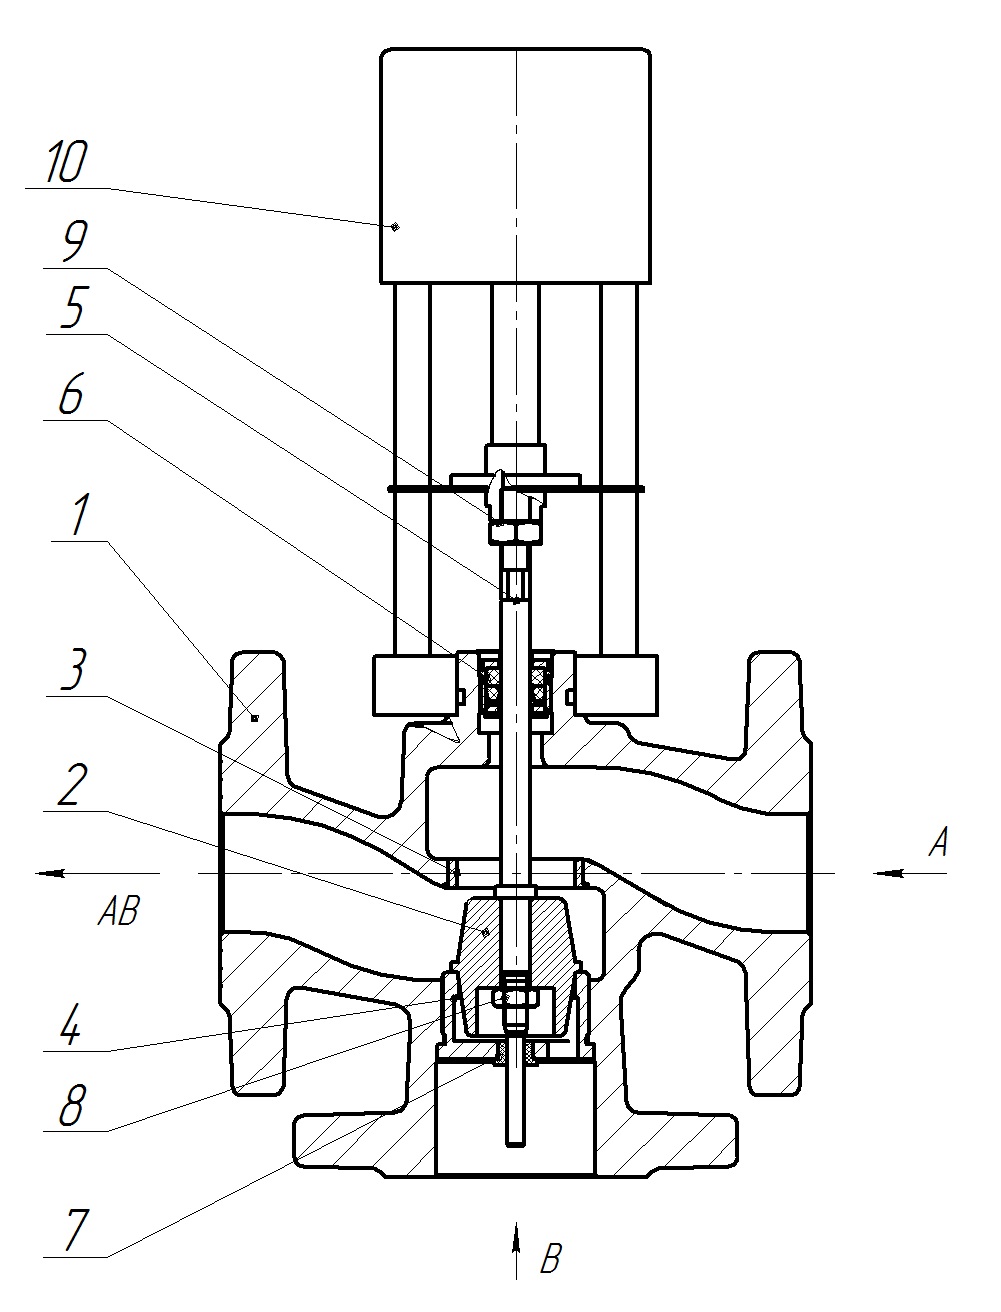 Клапан регулирующий трехходовой разделительный DN.ru 23ч901нж Ду20 Ру16 Kvs6,3 серый чугун СЧ20, фланцевый, Tmax до 150°С с электроприводом Катрабел TW-500-XD220